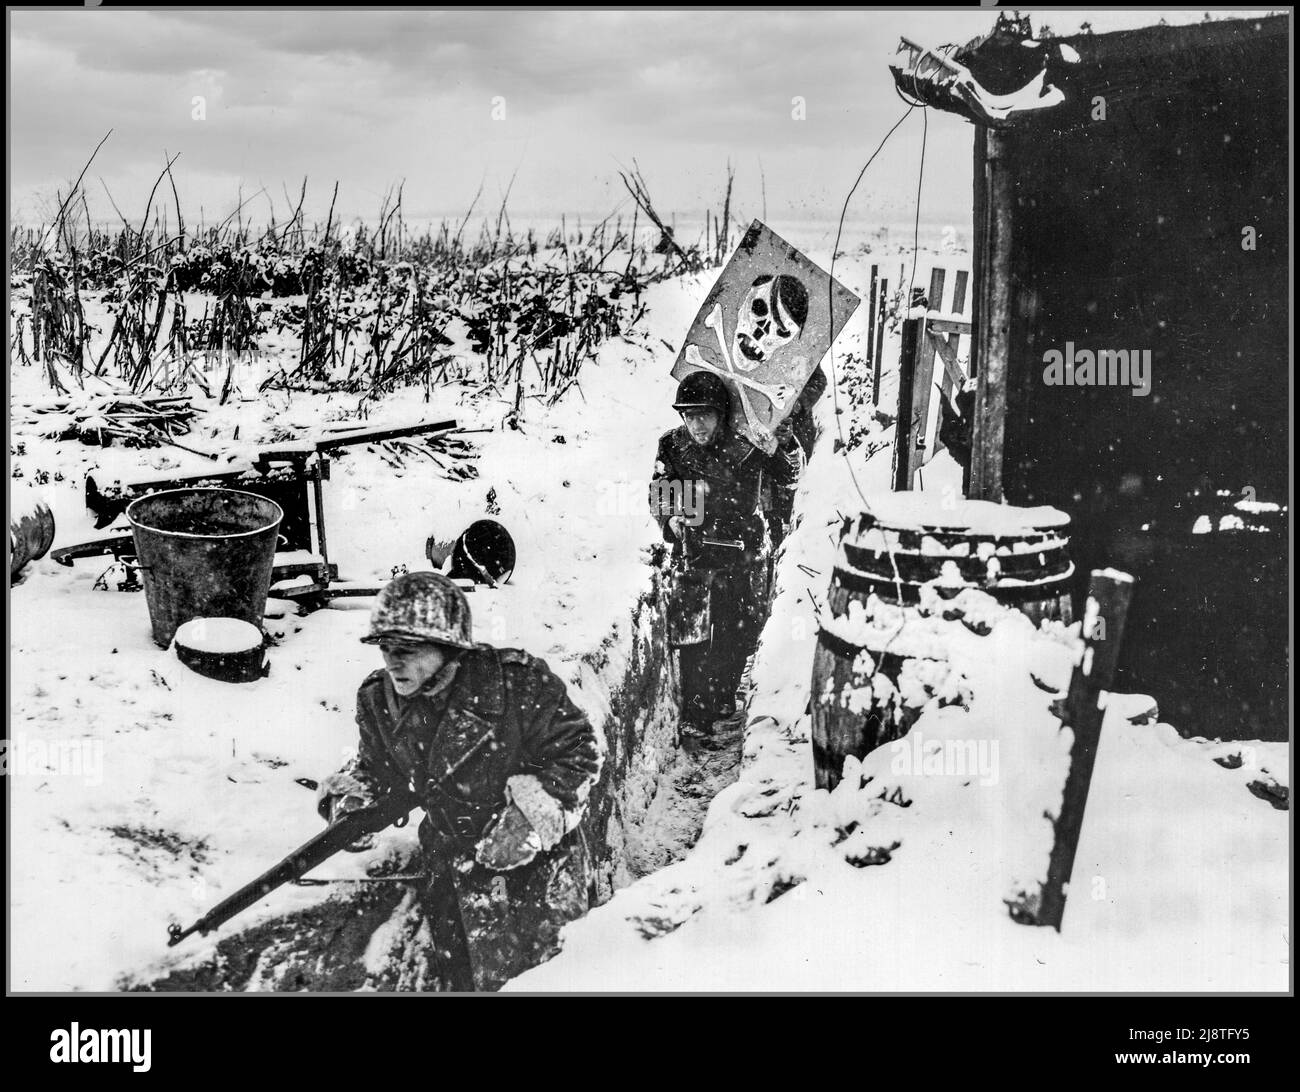 WW2 Rhein Deutschland 1945 Freie französische Infanterie-Patrouille der französischen Armee von 1. trägt ein Karikaturenplakat Hitlers von ihrer schneebedeckten Winterlage am Rhein weg. Das Grabenhumorplakat war auf einem Ufer des Flusses ausgestellt. Nazi-deutsche Beobachter sahen es mit einem Fernglas und durchlösten die Karte wütend mit Kugeln. 5 Januar 1945. Huningue, Frankreich. Fotograf: Stubenrauch. Stockfoto